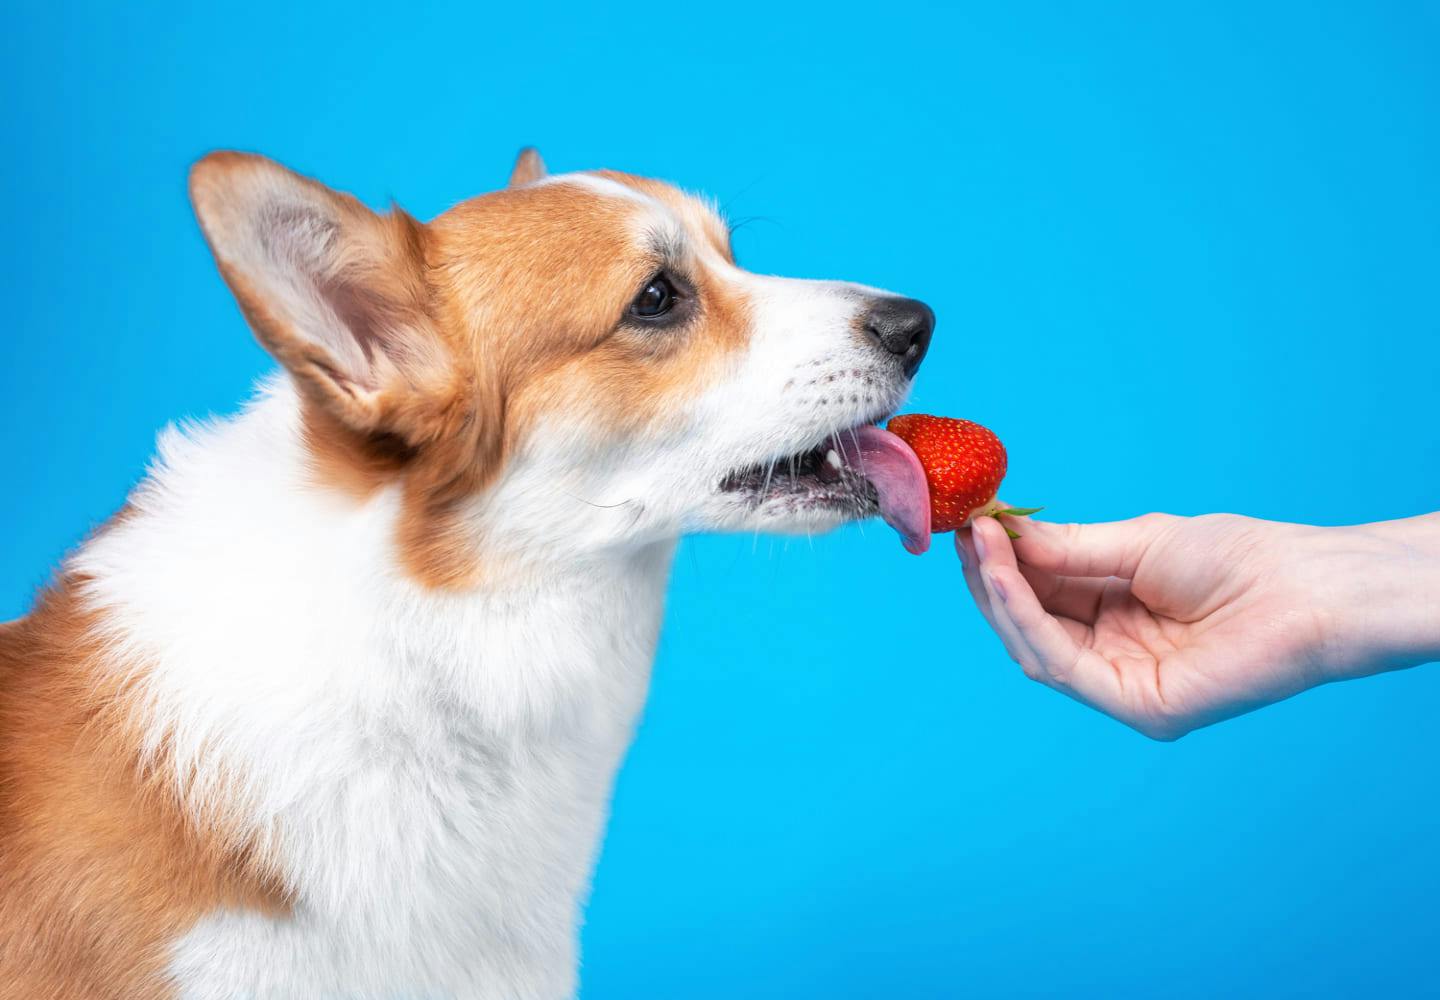 獣医師監修 犬はいちごを食べて大丈夫 注意点やおすすめの与え方 栄養面のメリットなどについて解説 Illness 病気 わんクォール